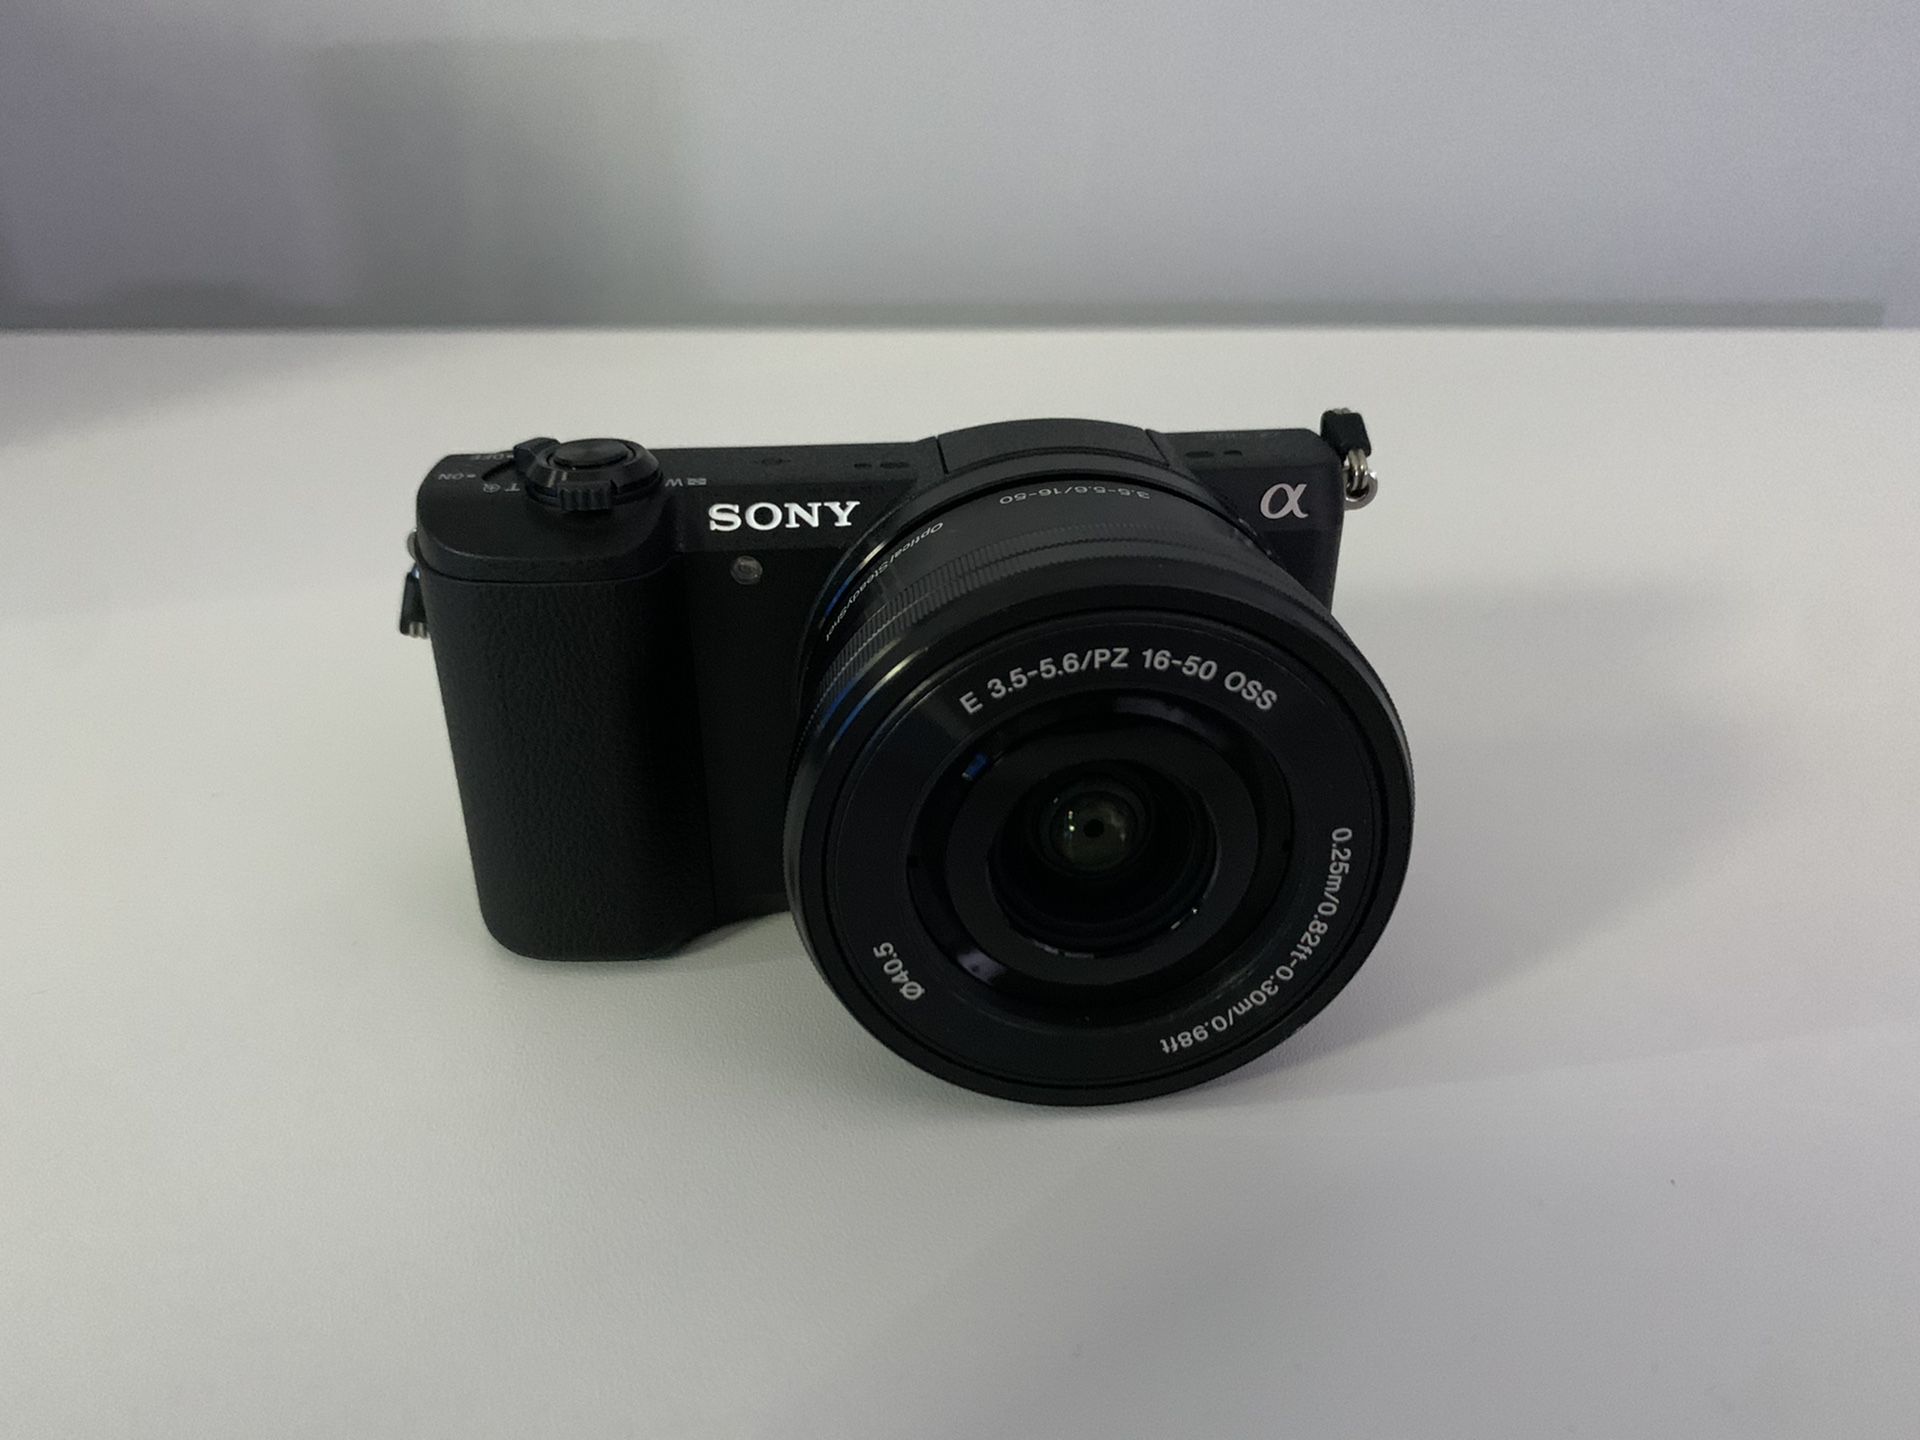 Sony a5100